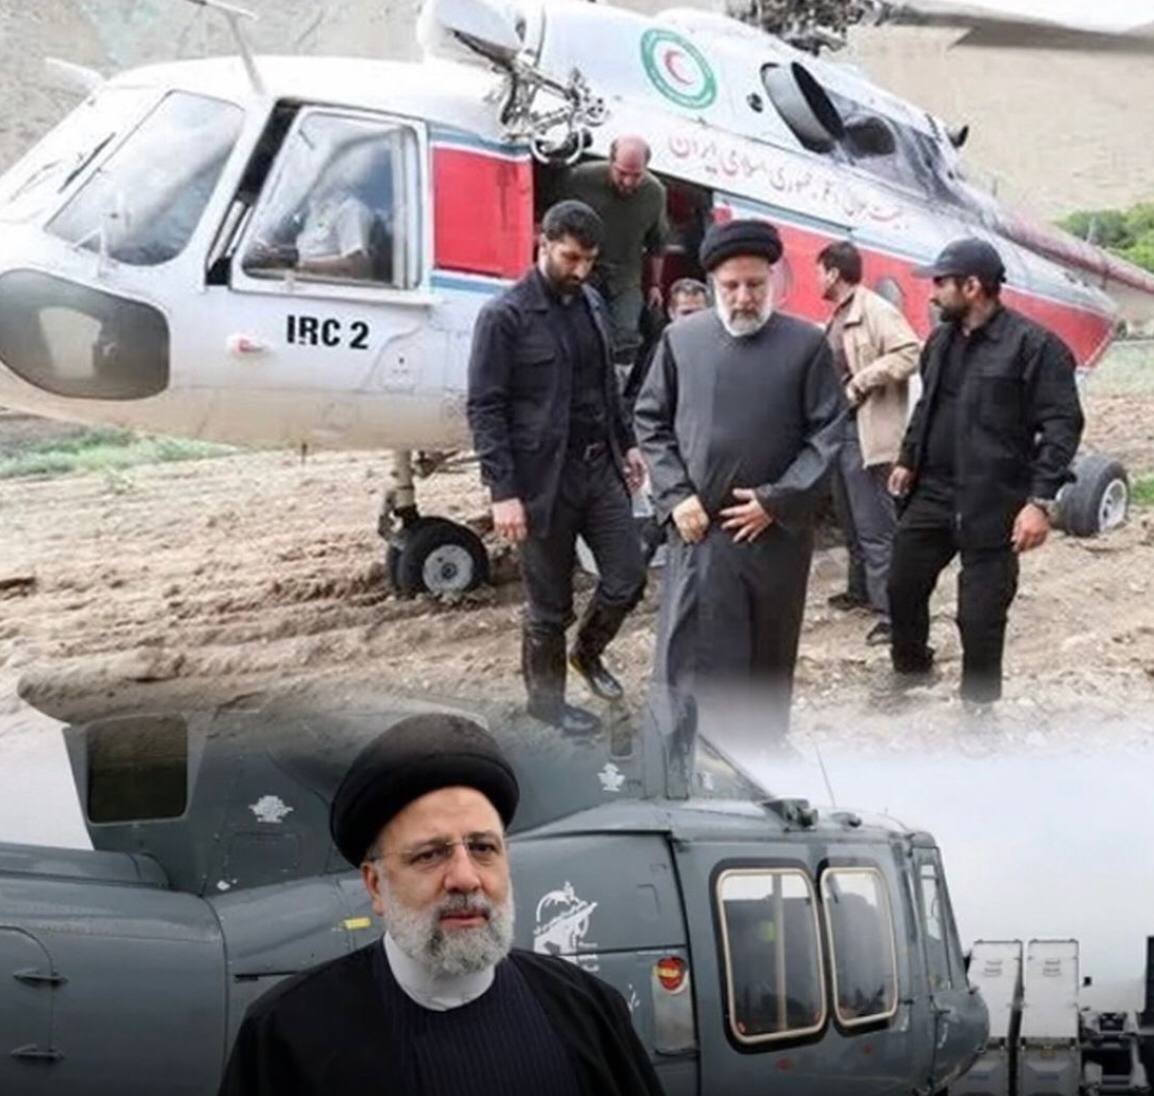 Presiden Iran Ebrahim Raisi Kecelakaan Helikopter Jatuh di Hutan dan Belum Ditemukan, Begini Kronologinya